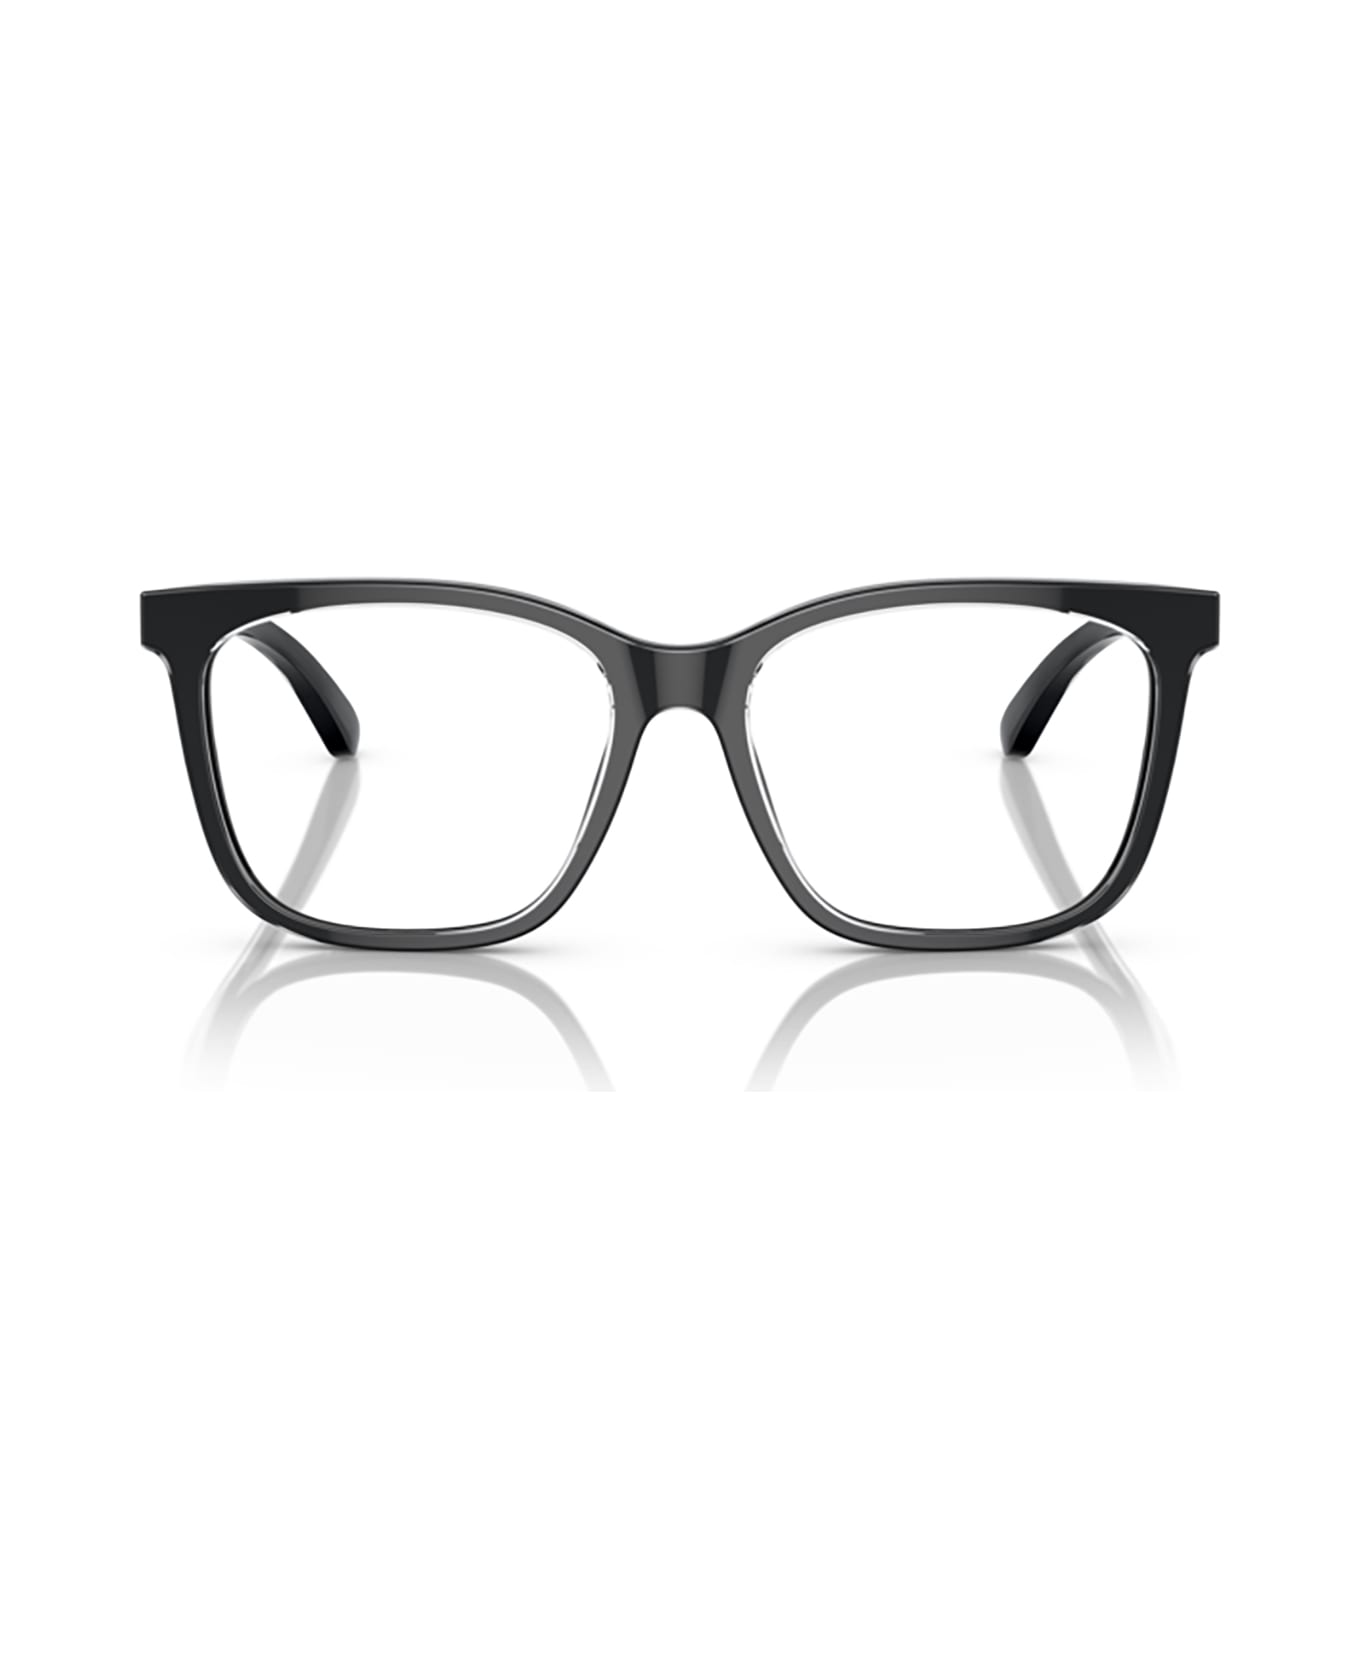 Emporio Armani Ea3228 Shiny Black / Top Crystal Glasses - Shiny Black / Top Crystal